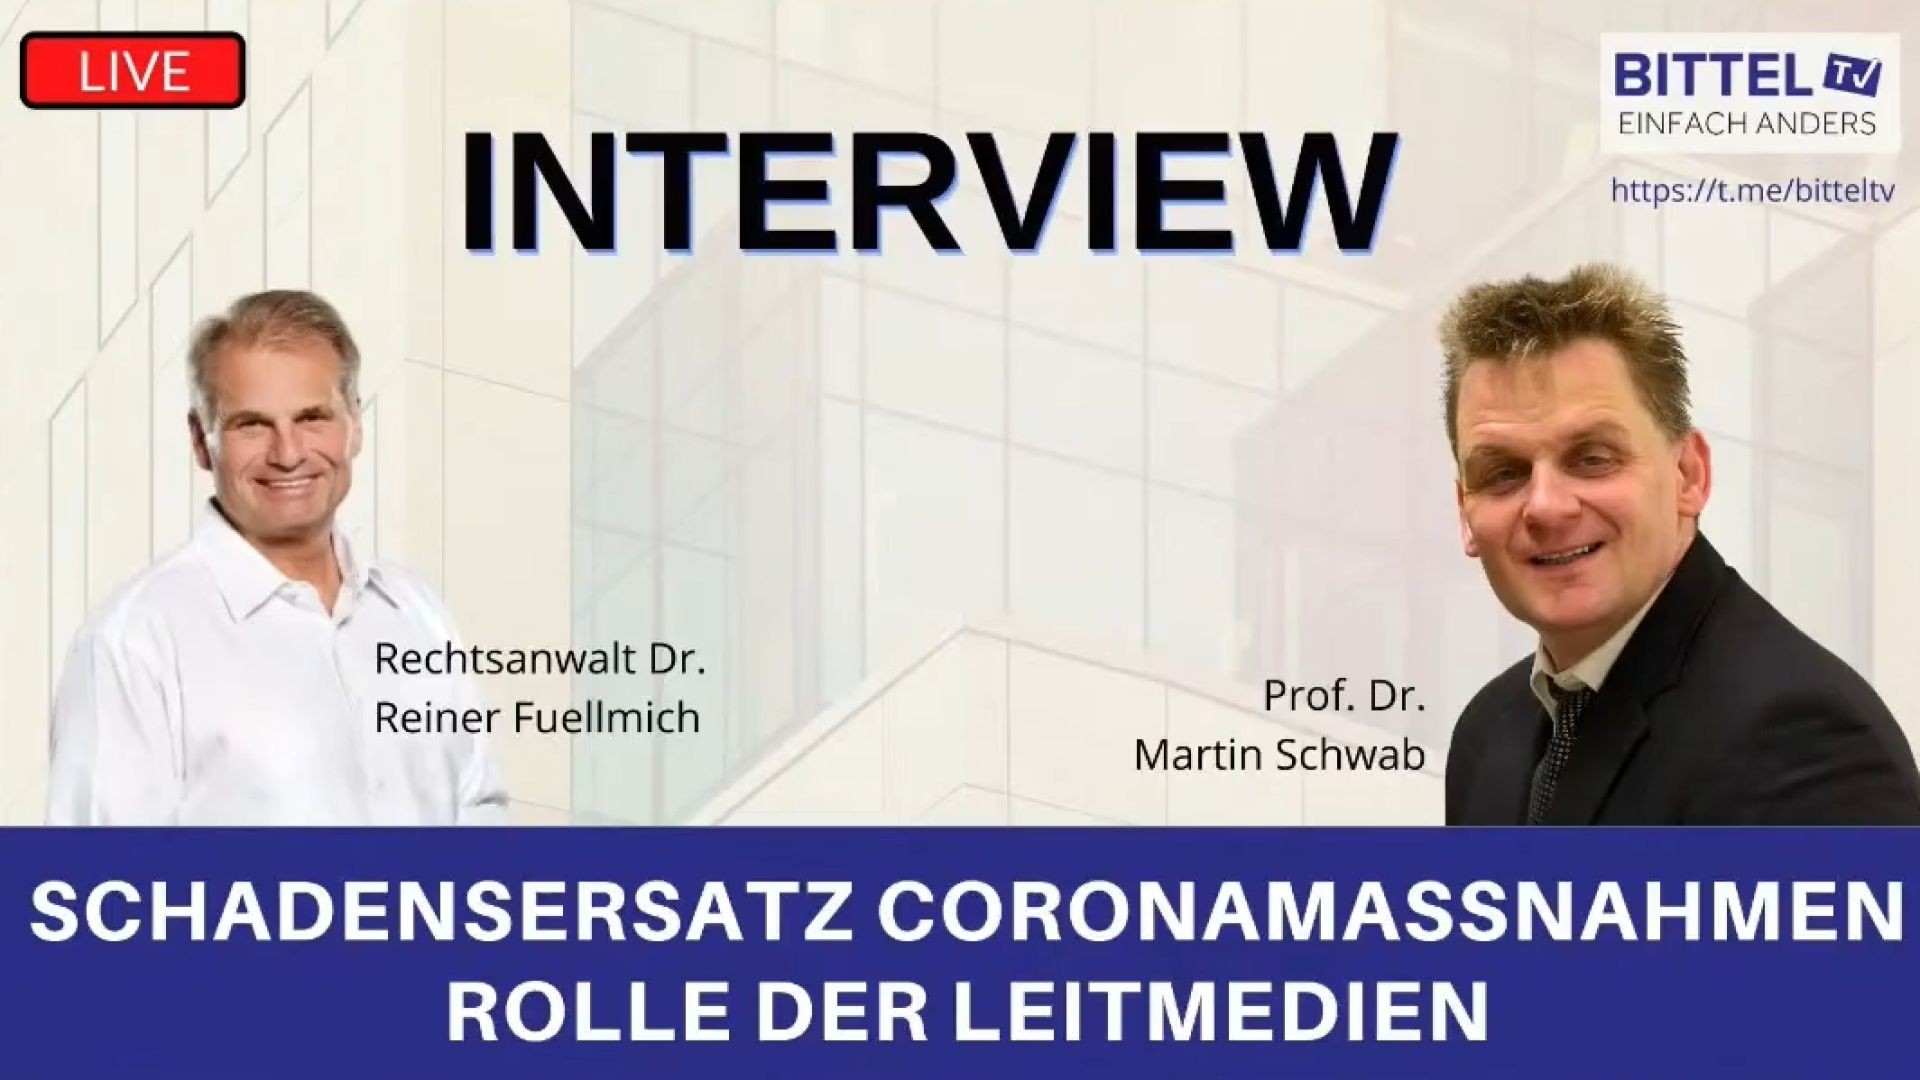 Interview mit Rechtsanwalt Dr. Reiner Fuellmich - Prof. Dr. Martin Schwab - 13.12.20